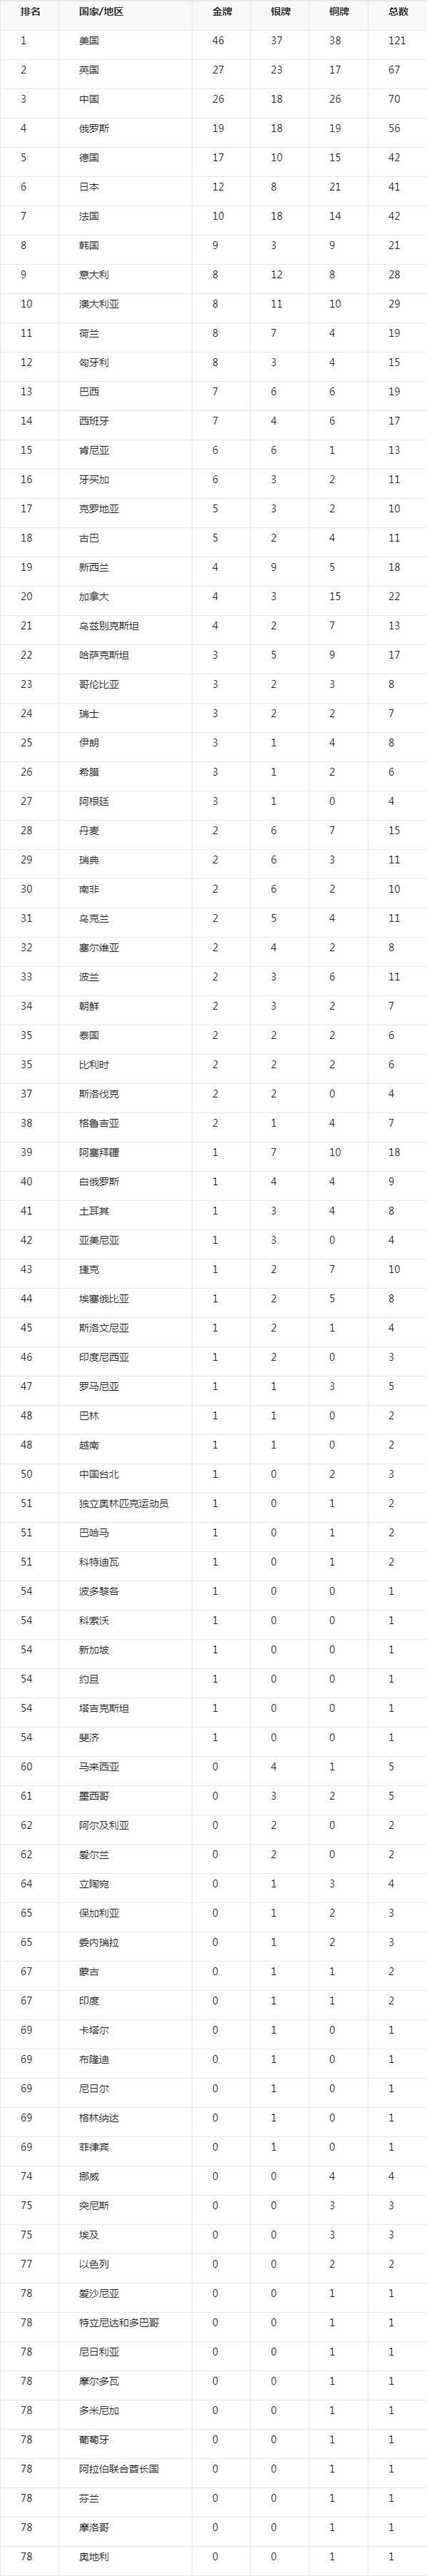 北京奥运会奖牌榜排名 北京奥运会奖牌榜排名中国